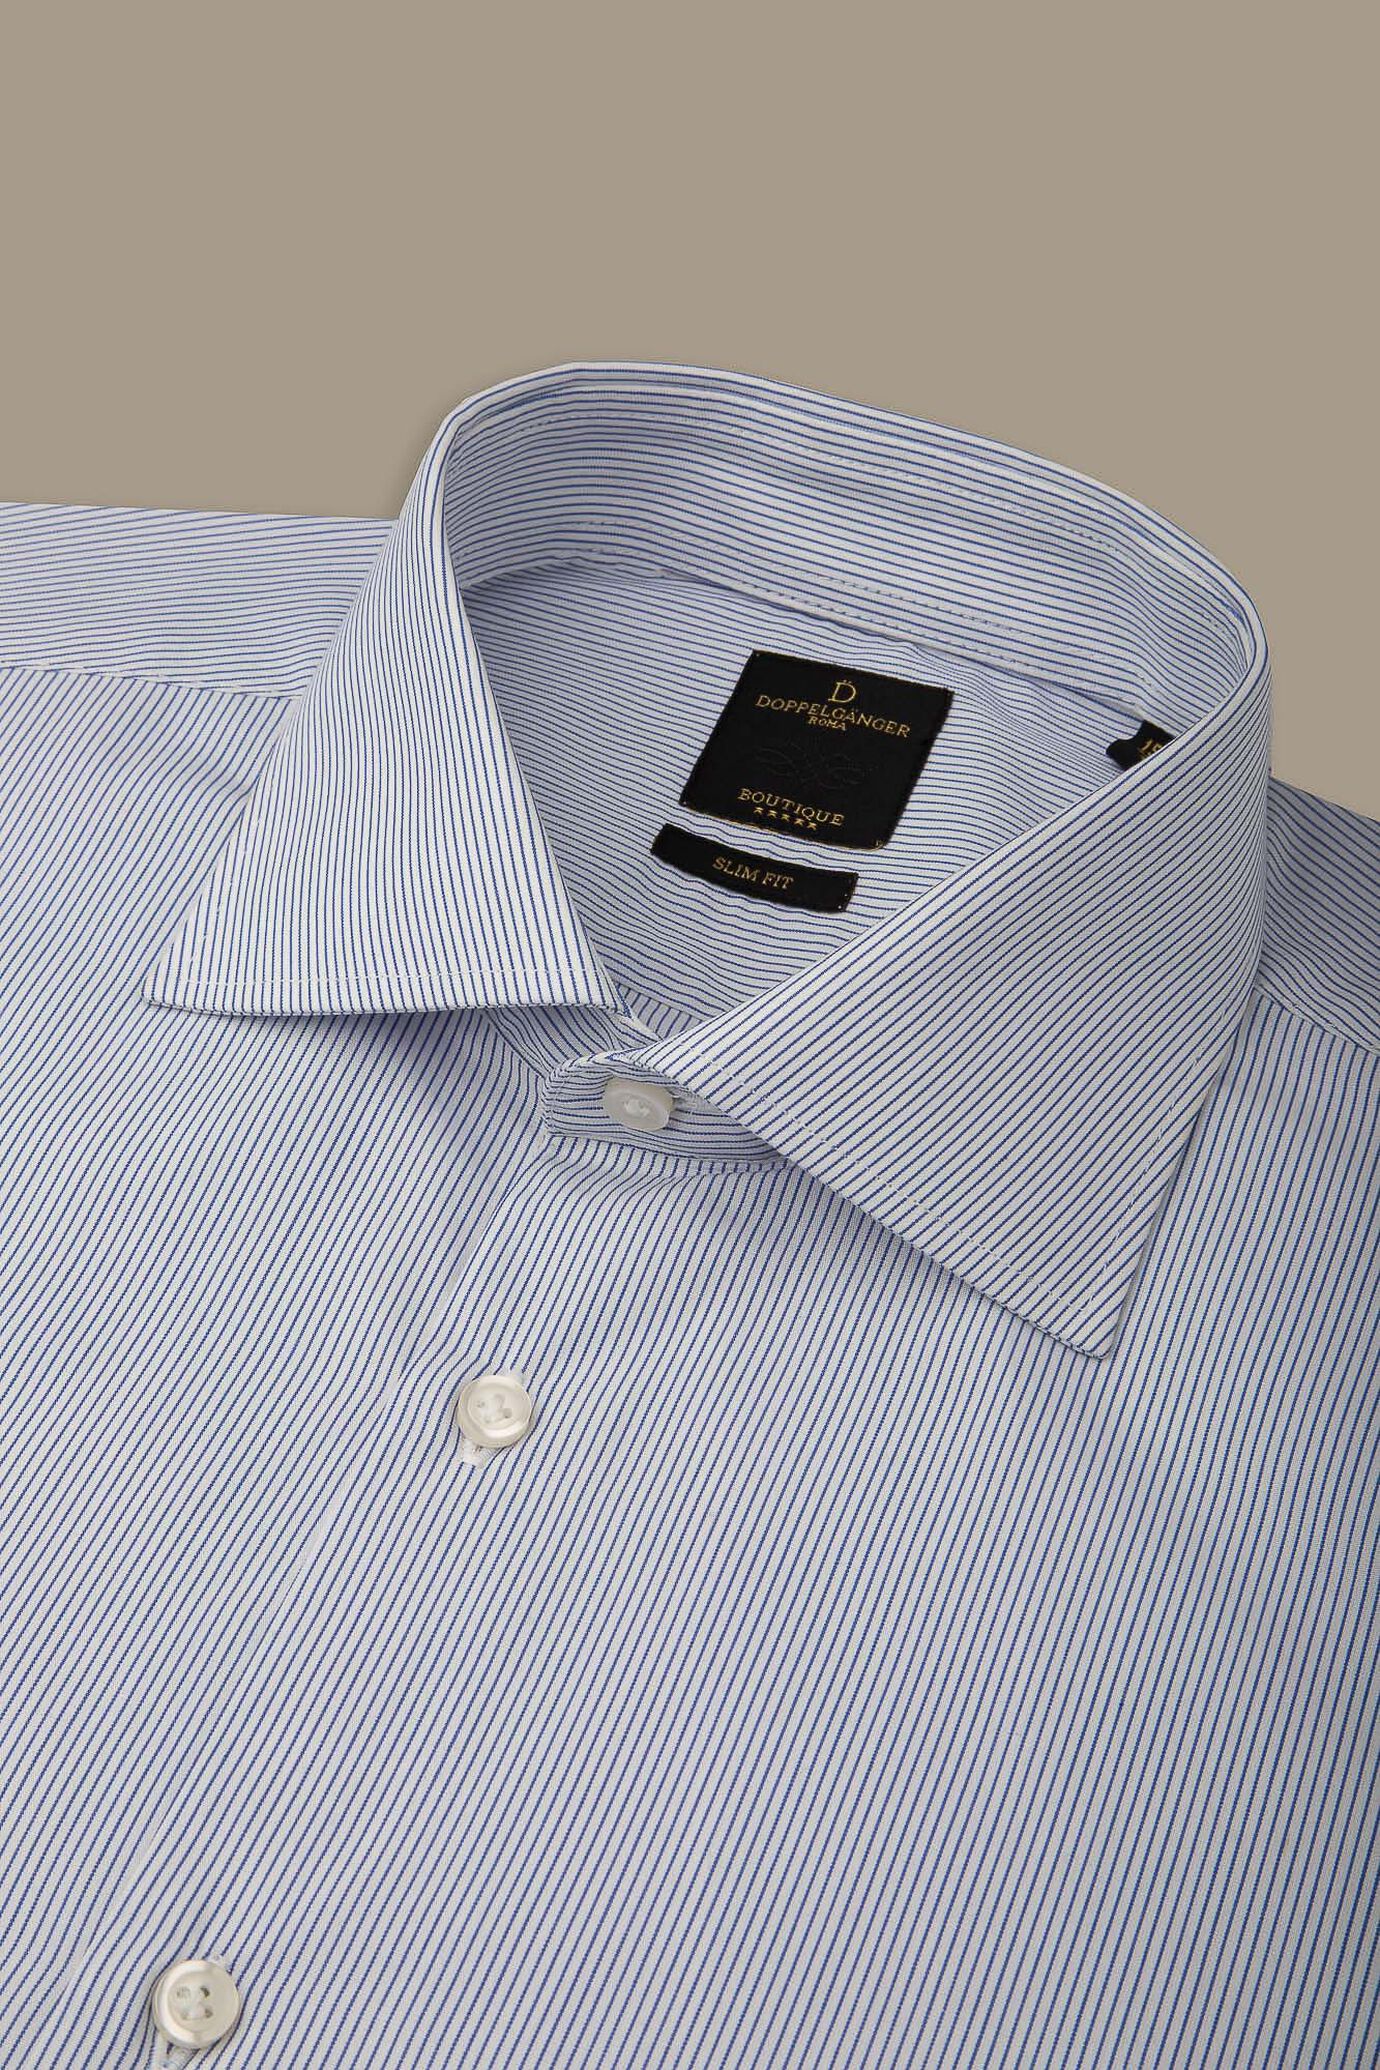 Camicia classica uomo collo francese tinto filo a righe white/blue image number 1